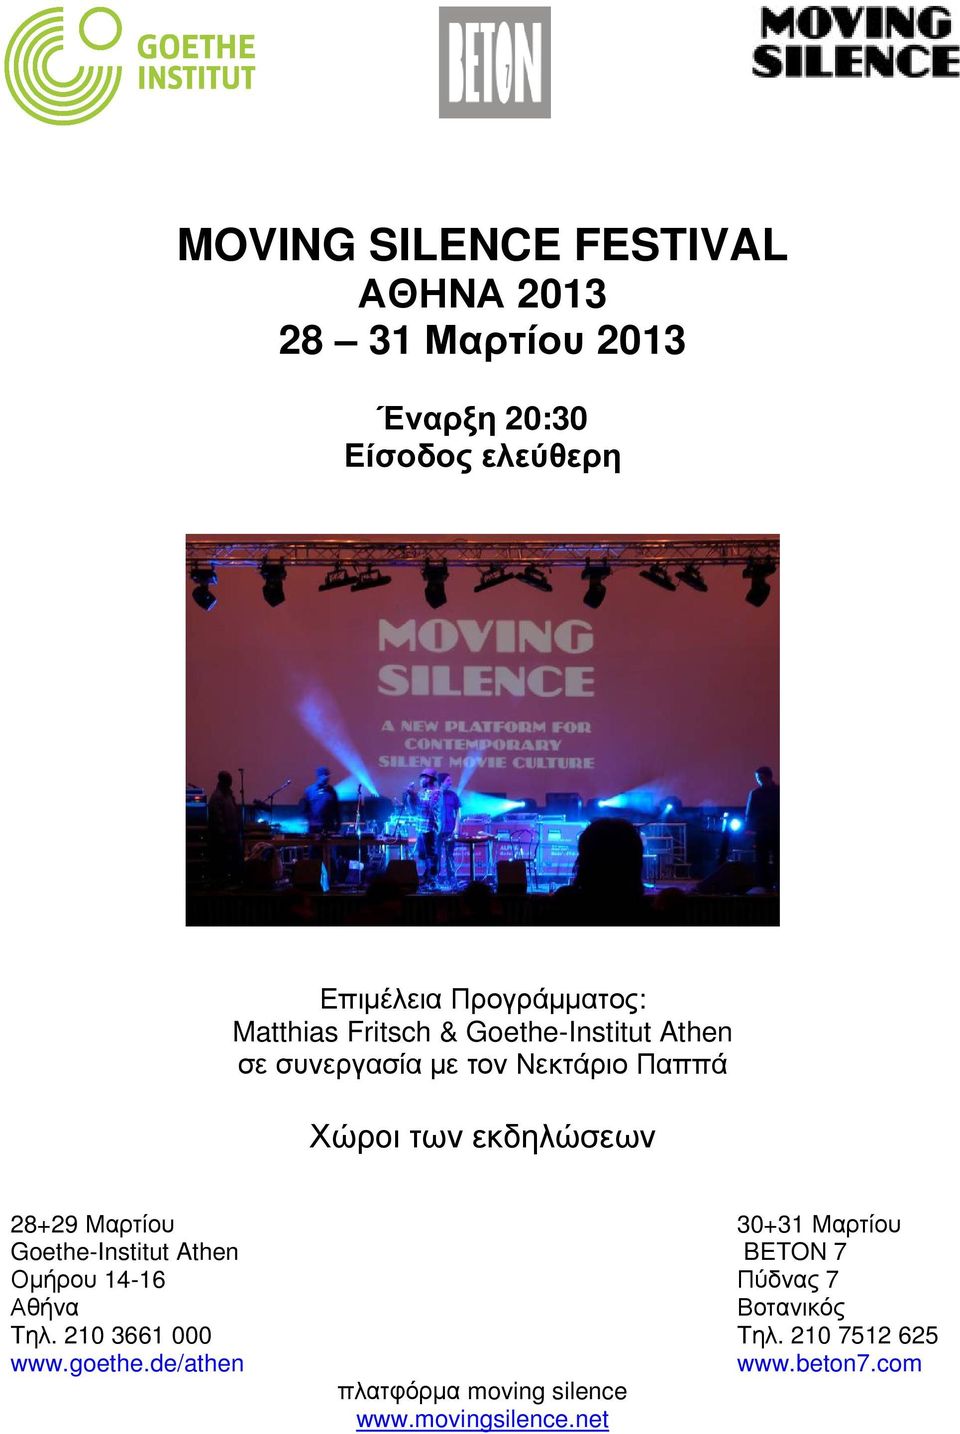 εκδηλώσεων 28+29 Μαρτίου 30+31 Μαρτίου Goethe-Institut Athen BETON 7 Οµήρου 14-16 Πύδνας 7 Αθήνα